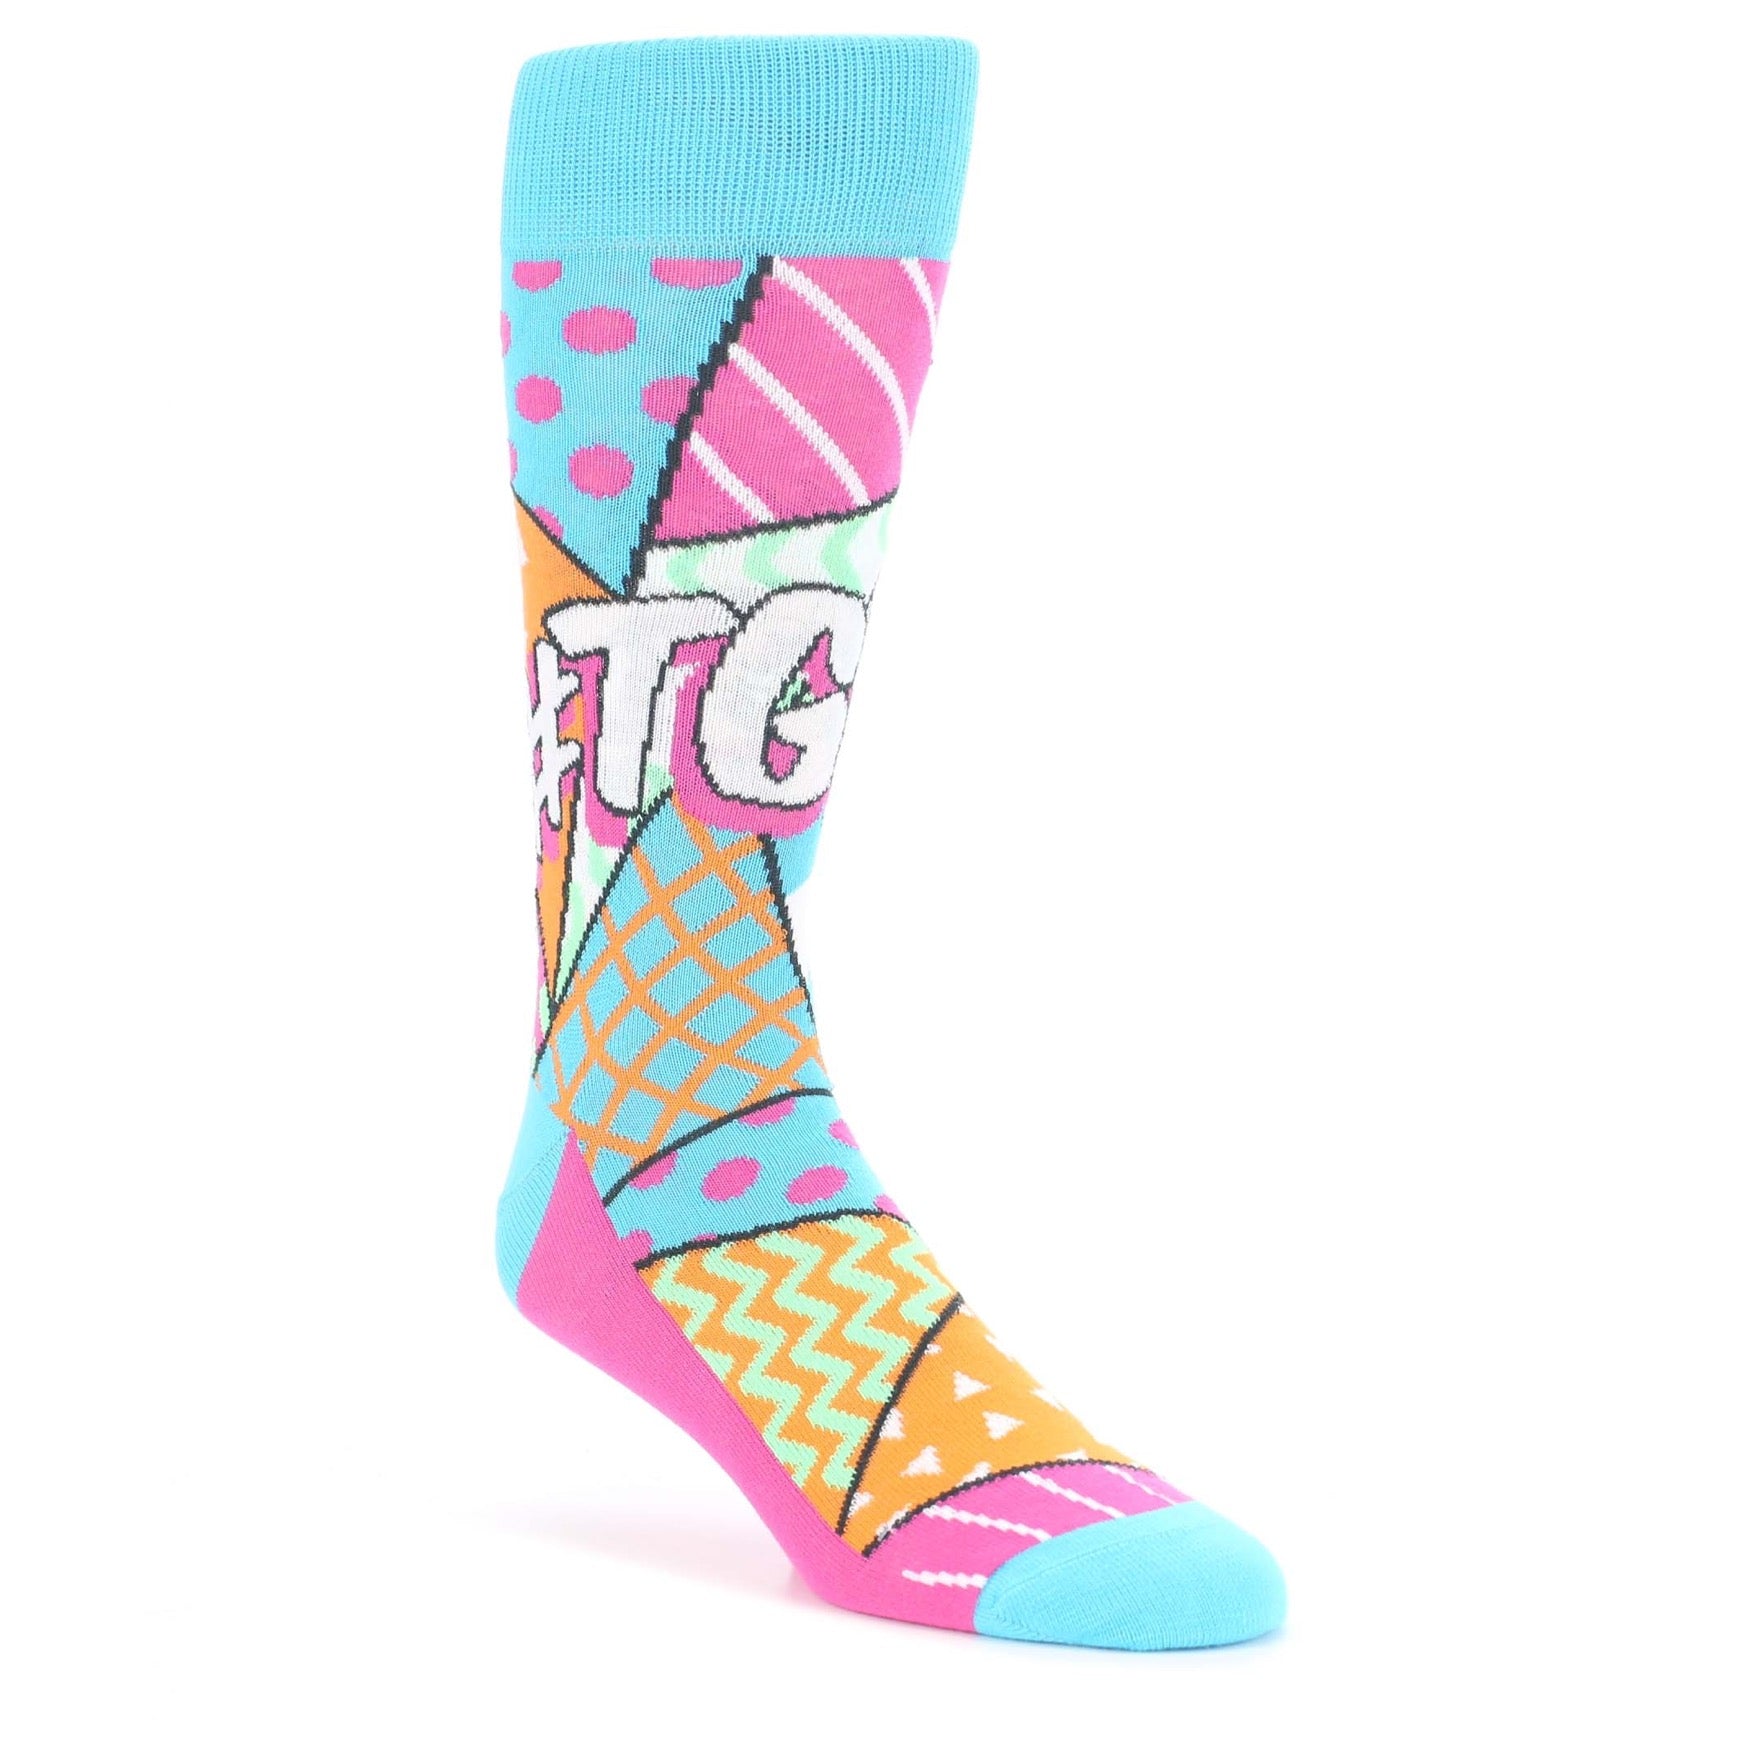 TGIF Socks - Men's Novelty Dress Socks